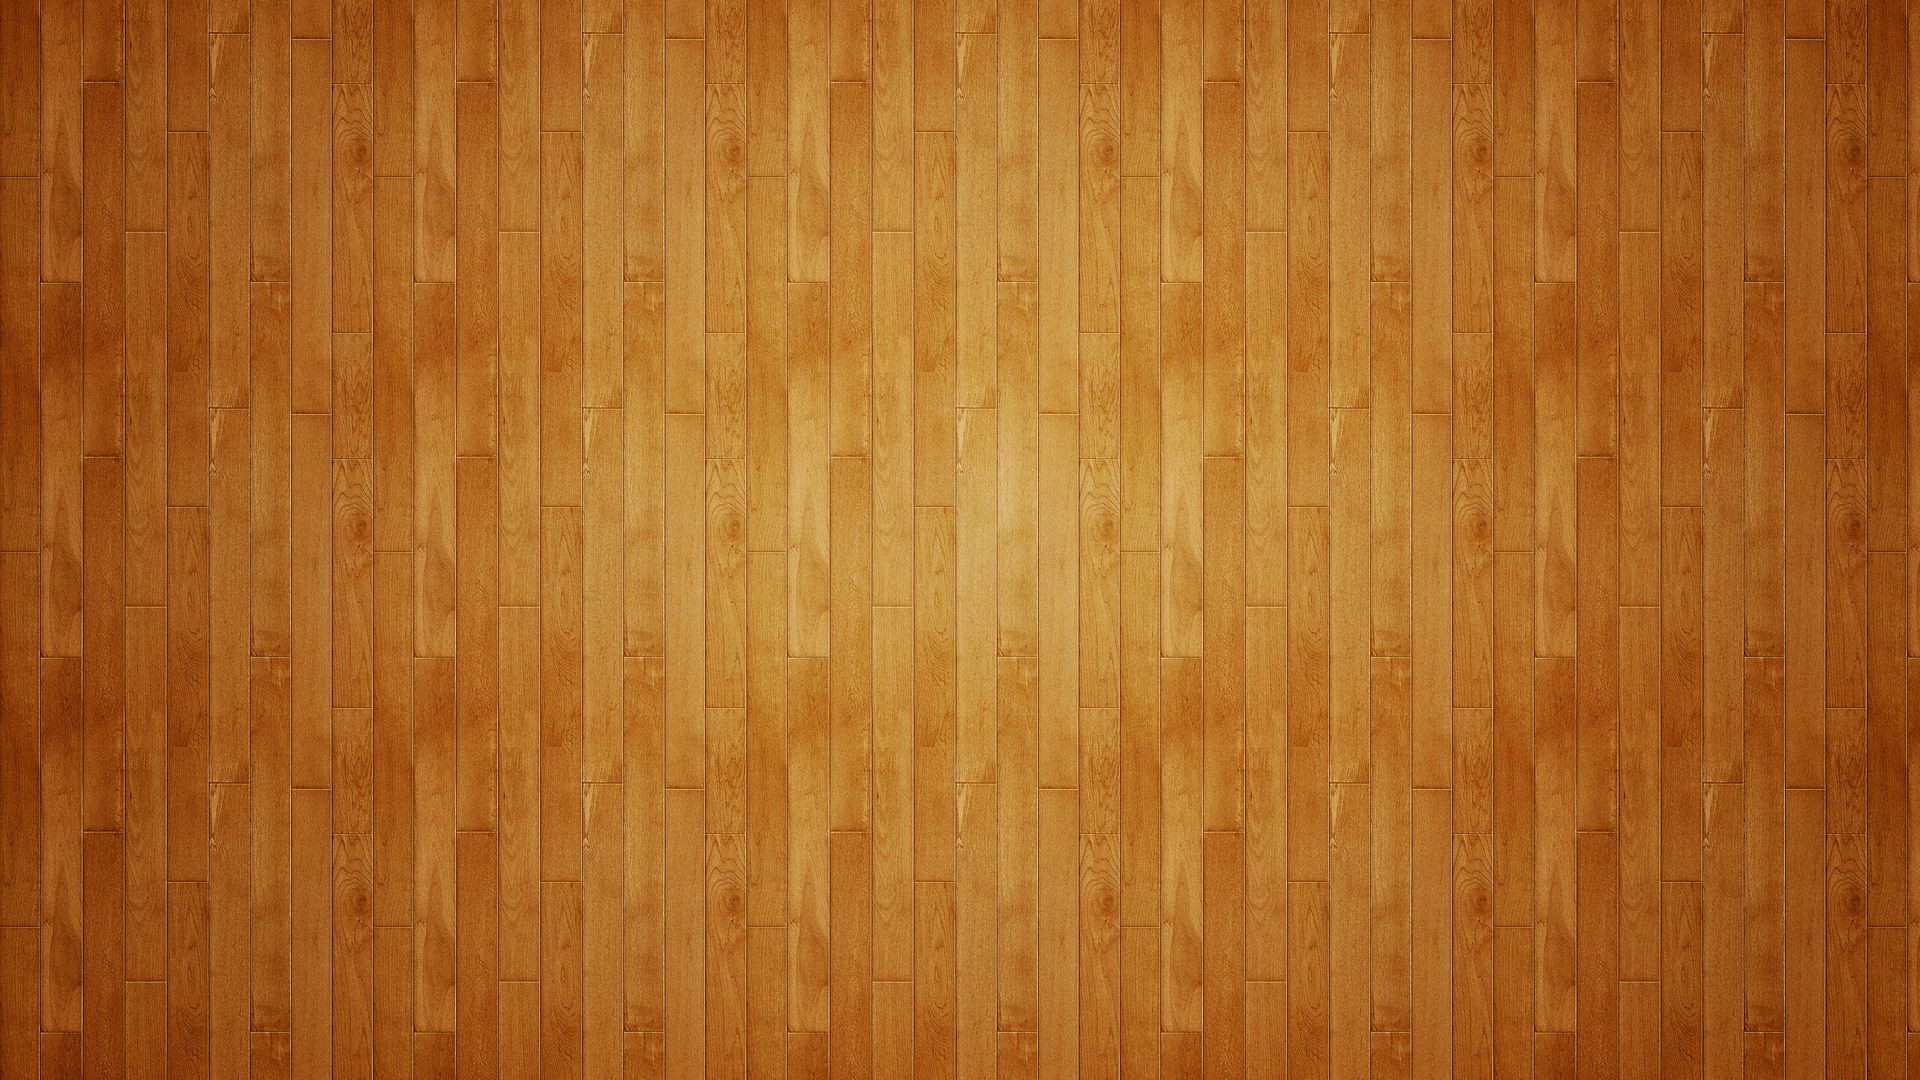 Wood Floor 1080p Wallpaper Imgprix